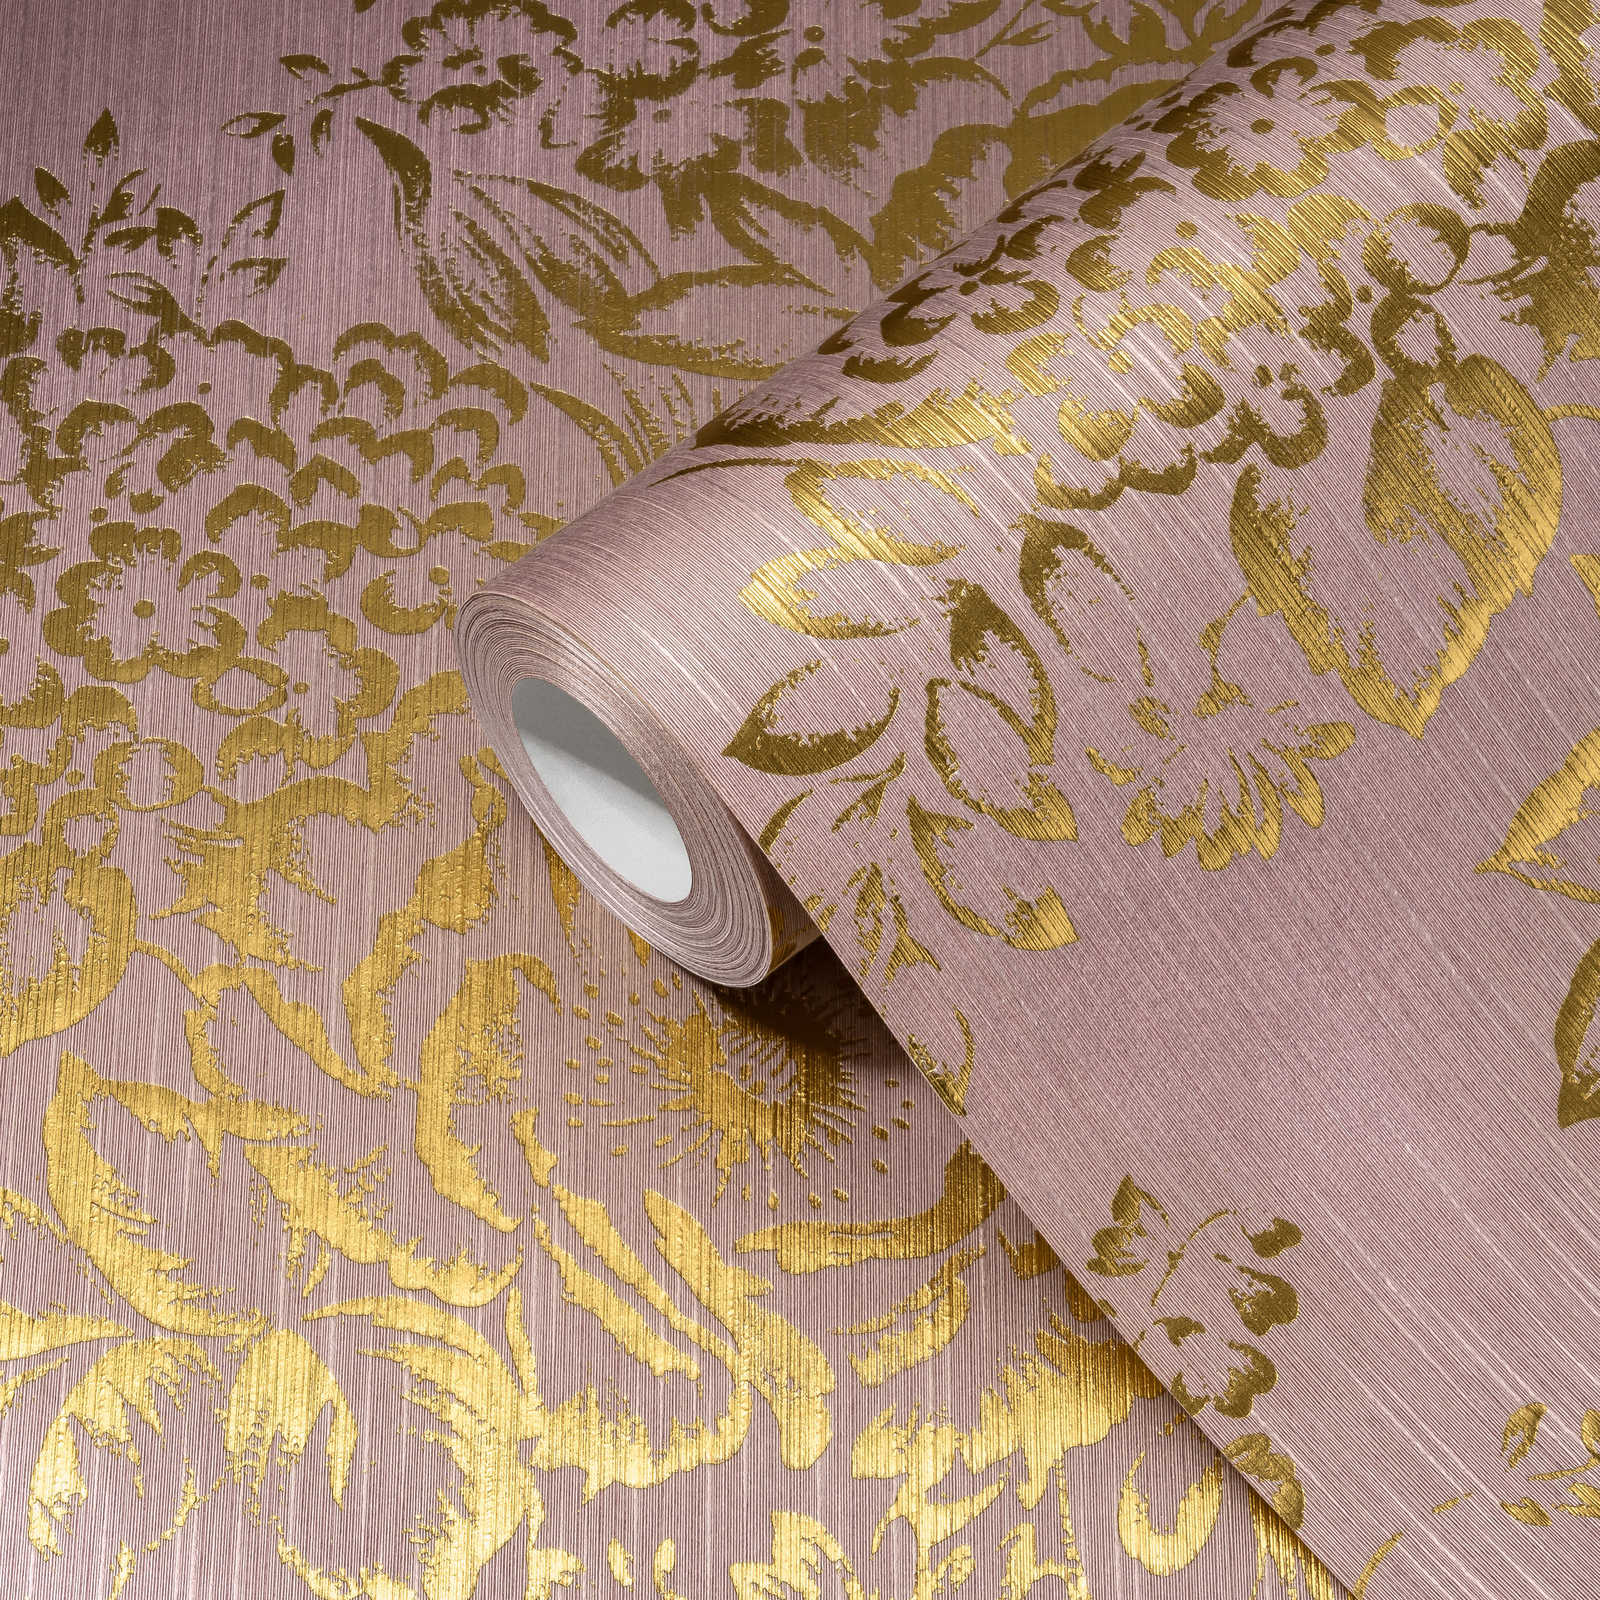             Textuurbehang met gouden bloemenpatroon - goud, roze
        